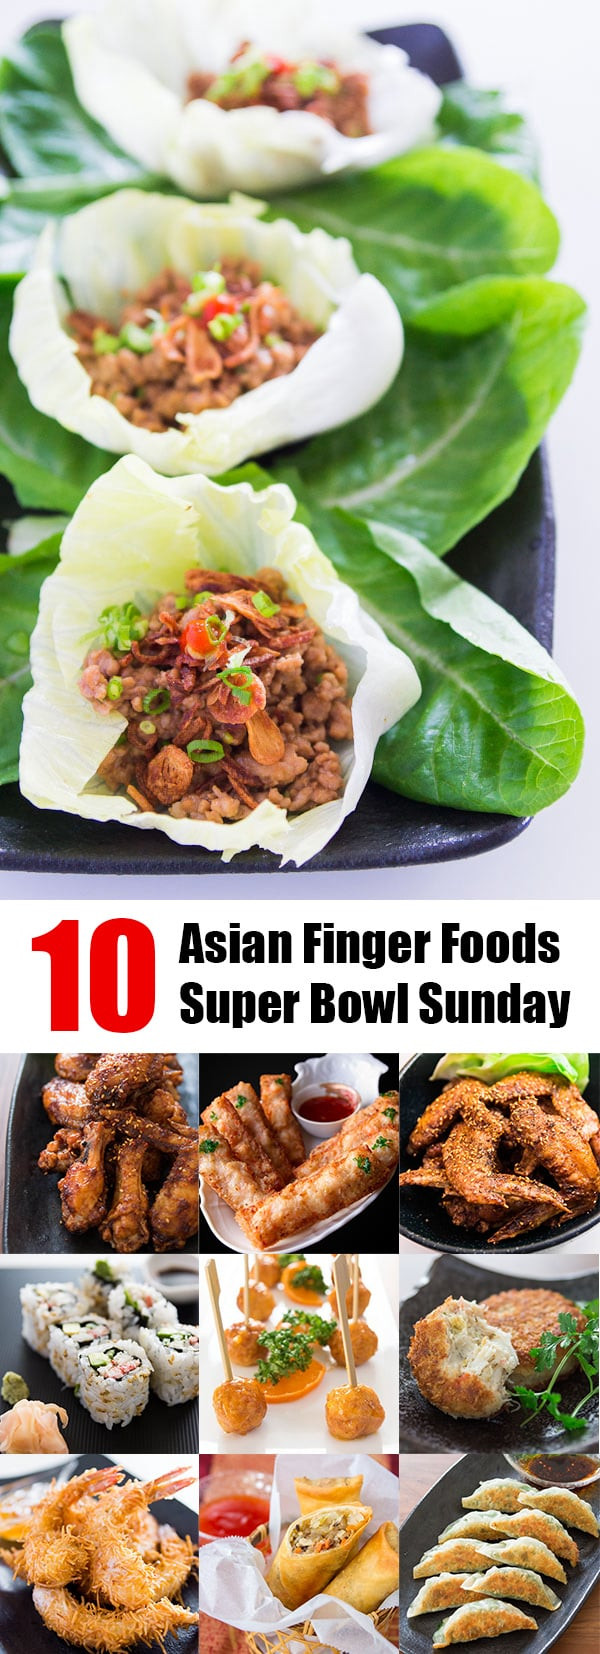 Super Bowl Finger Food Recipes
 10 Asian Finger Foods for Super Bowl Sunday